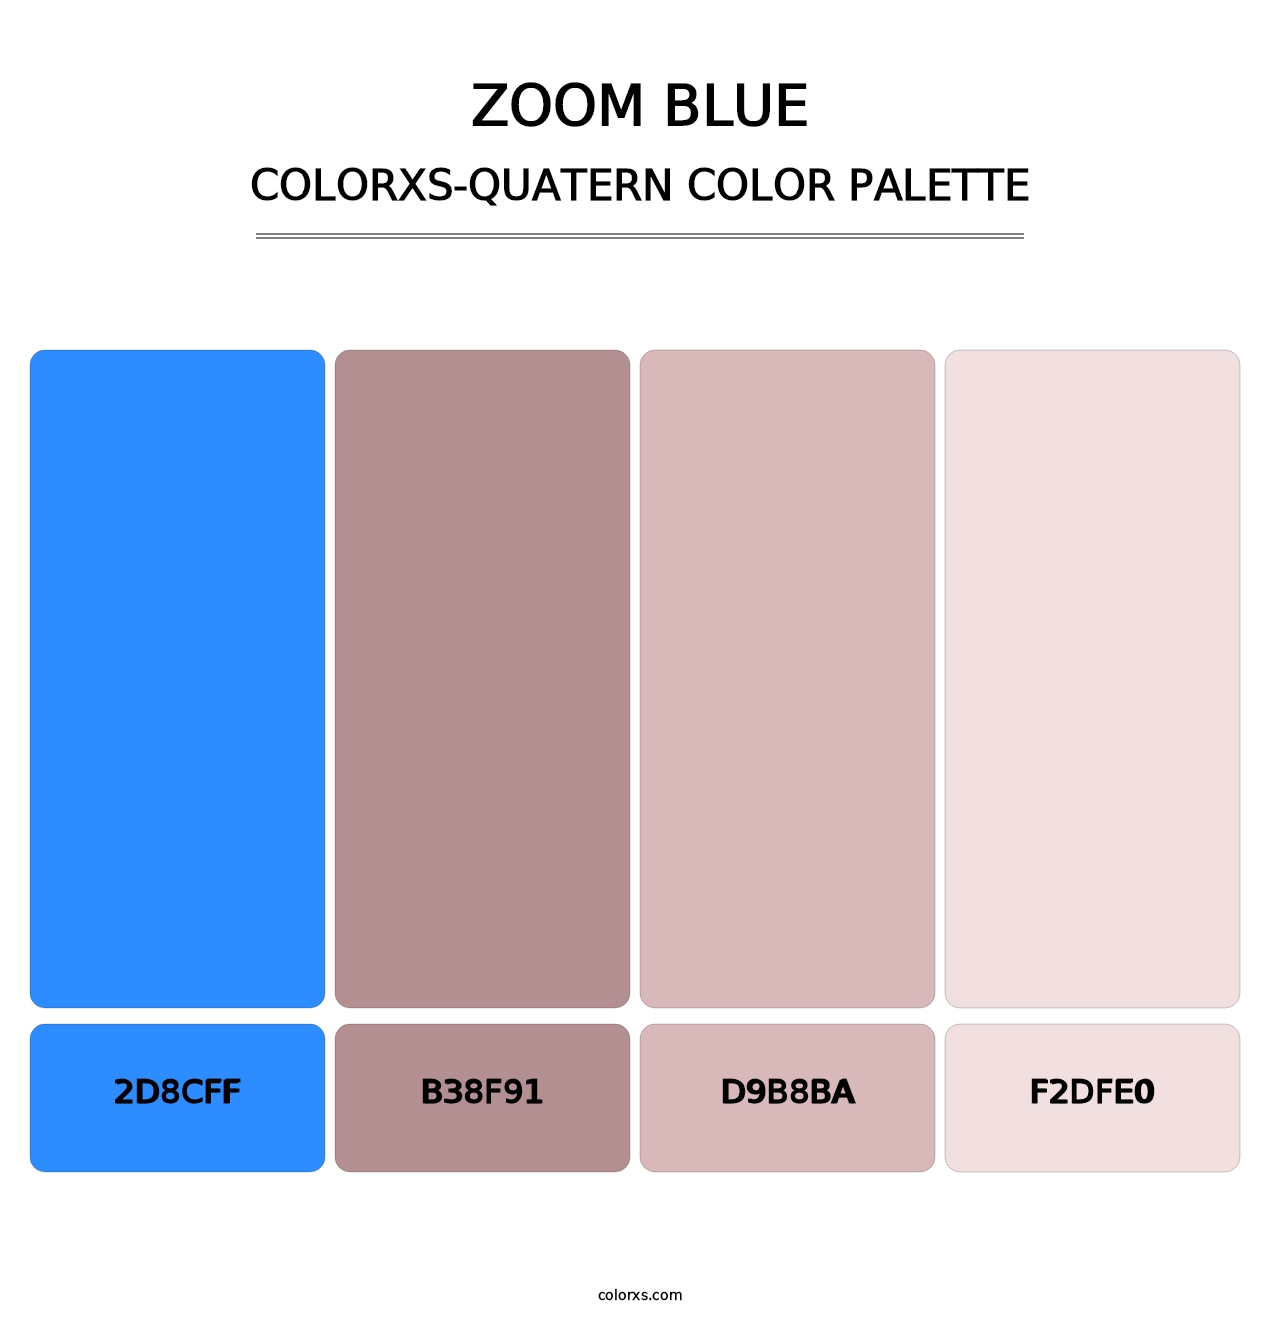 Zoom Blue - Colorxs Quatern Palette